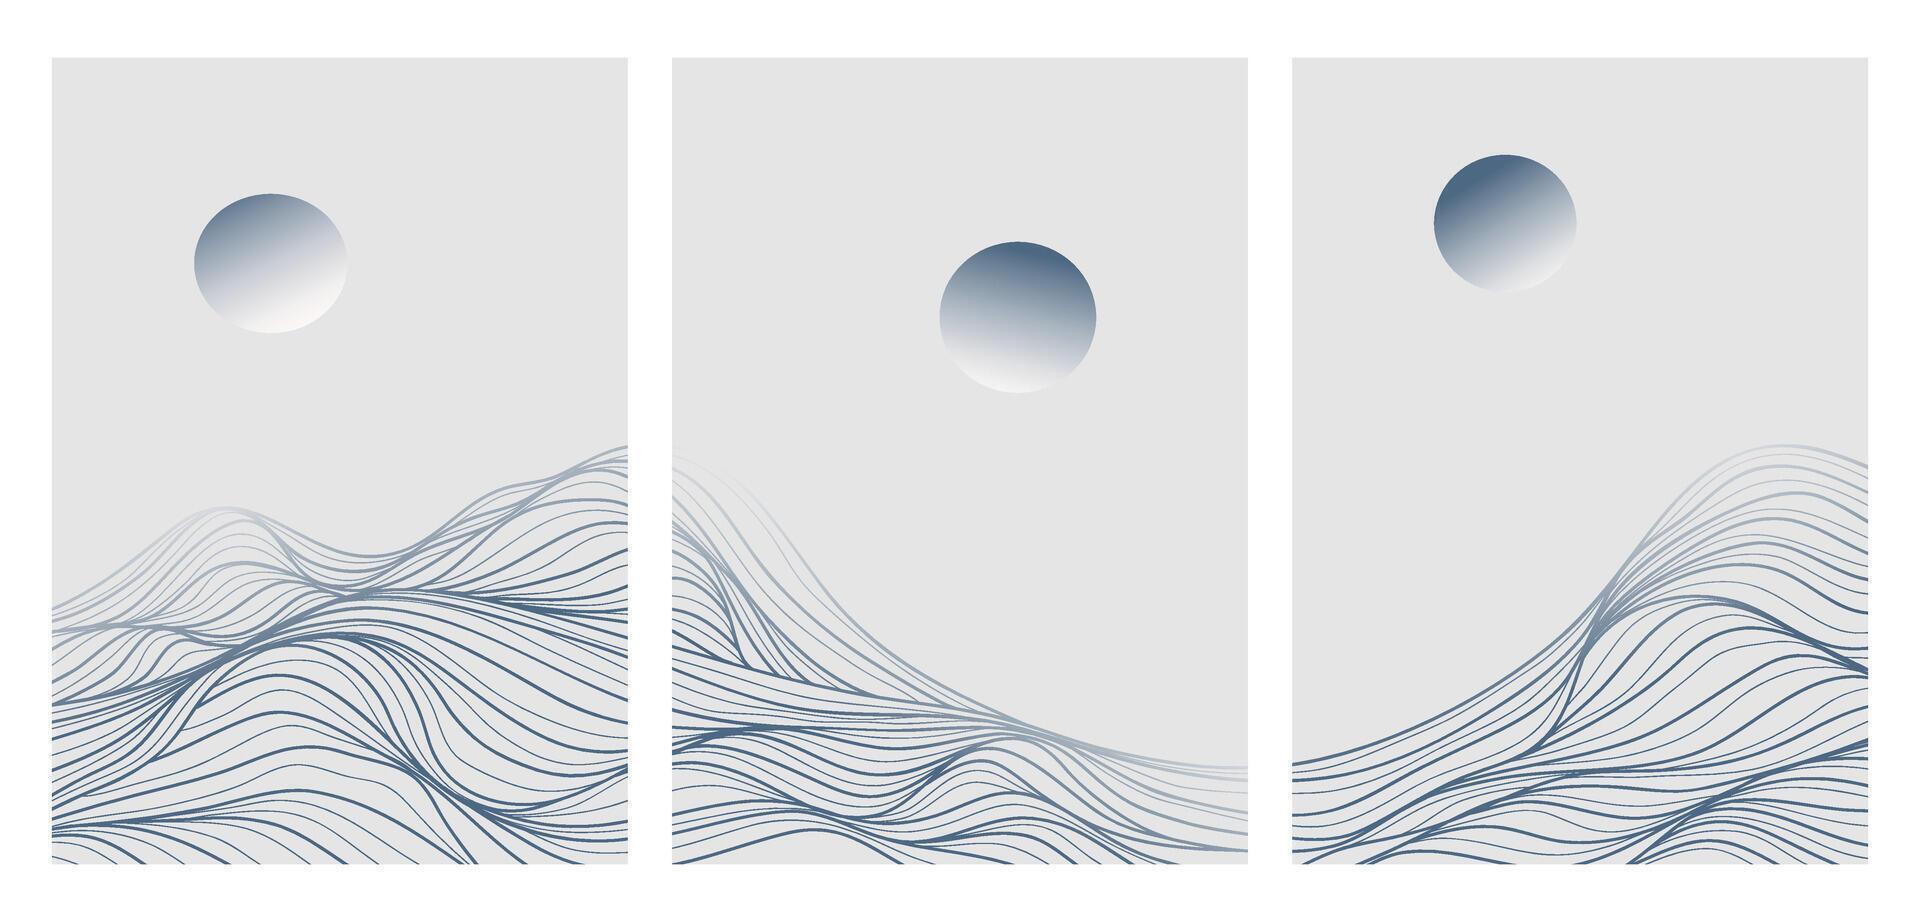 reeks van berg lijn kunst landschap illustratie. creatief minimalistische modern lijn kunst patroon. abstract hedendaags esthetisch achtergronden landschappen vector